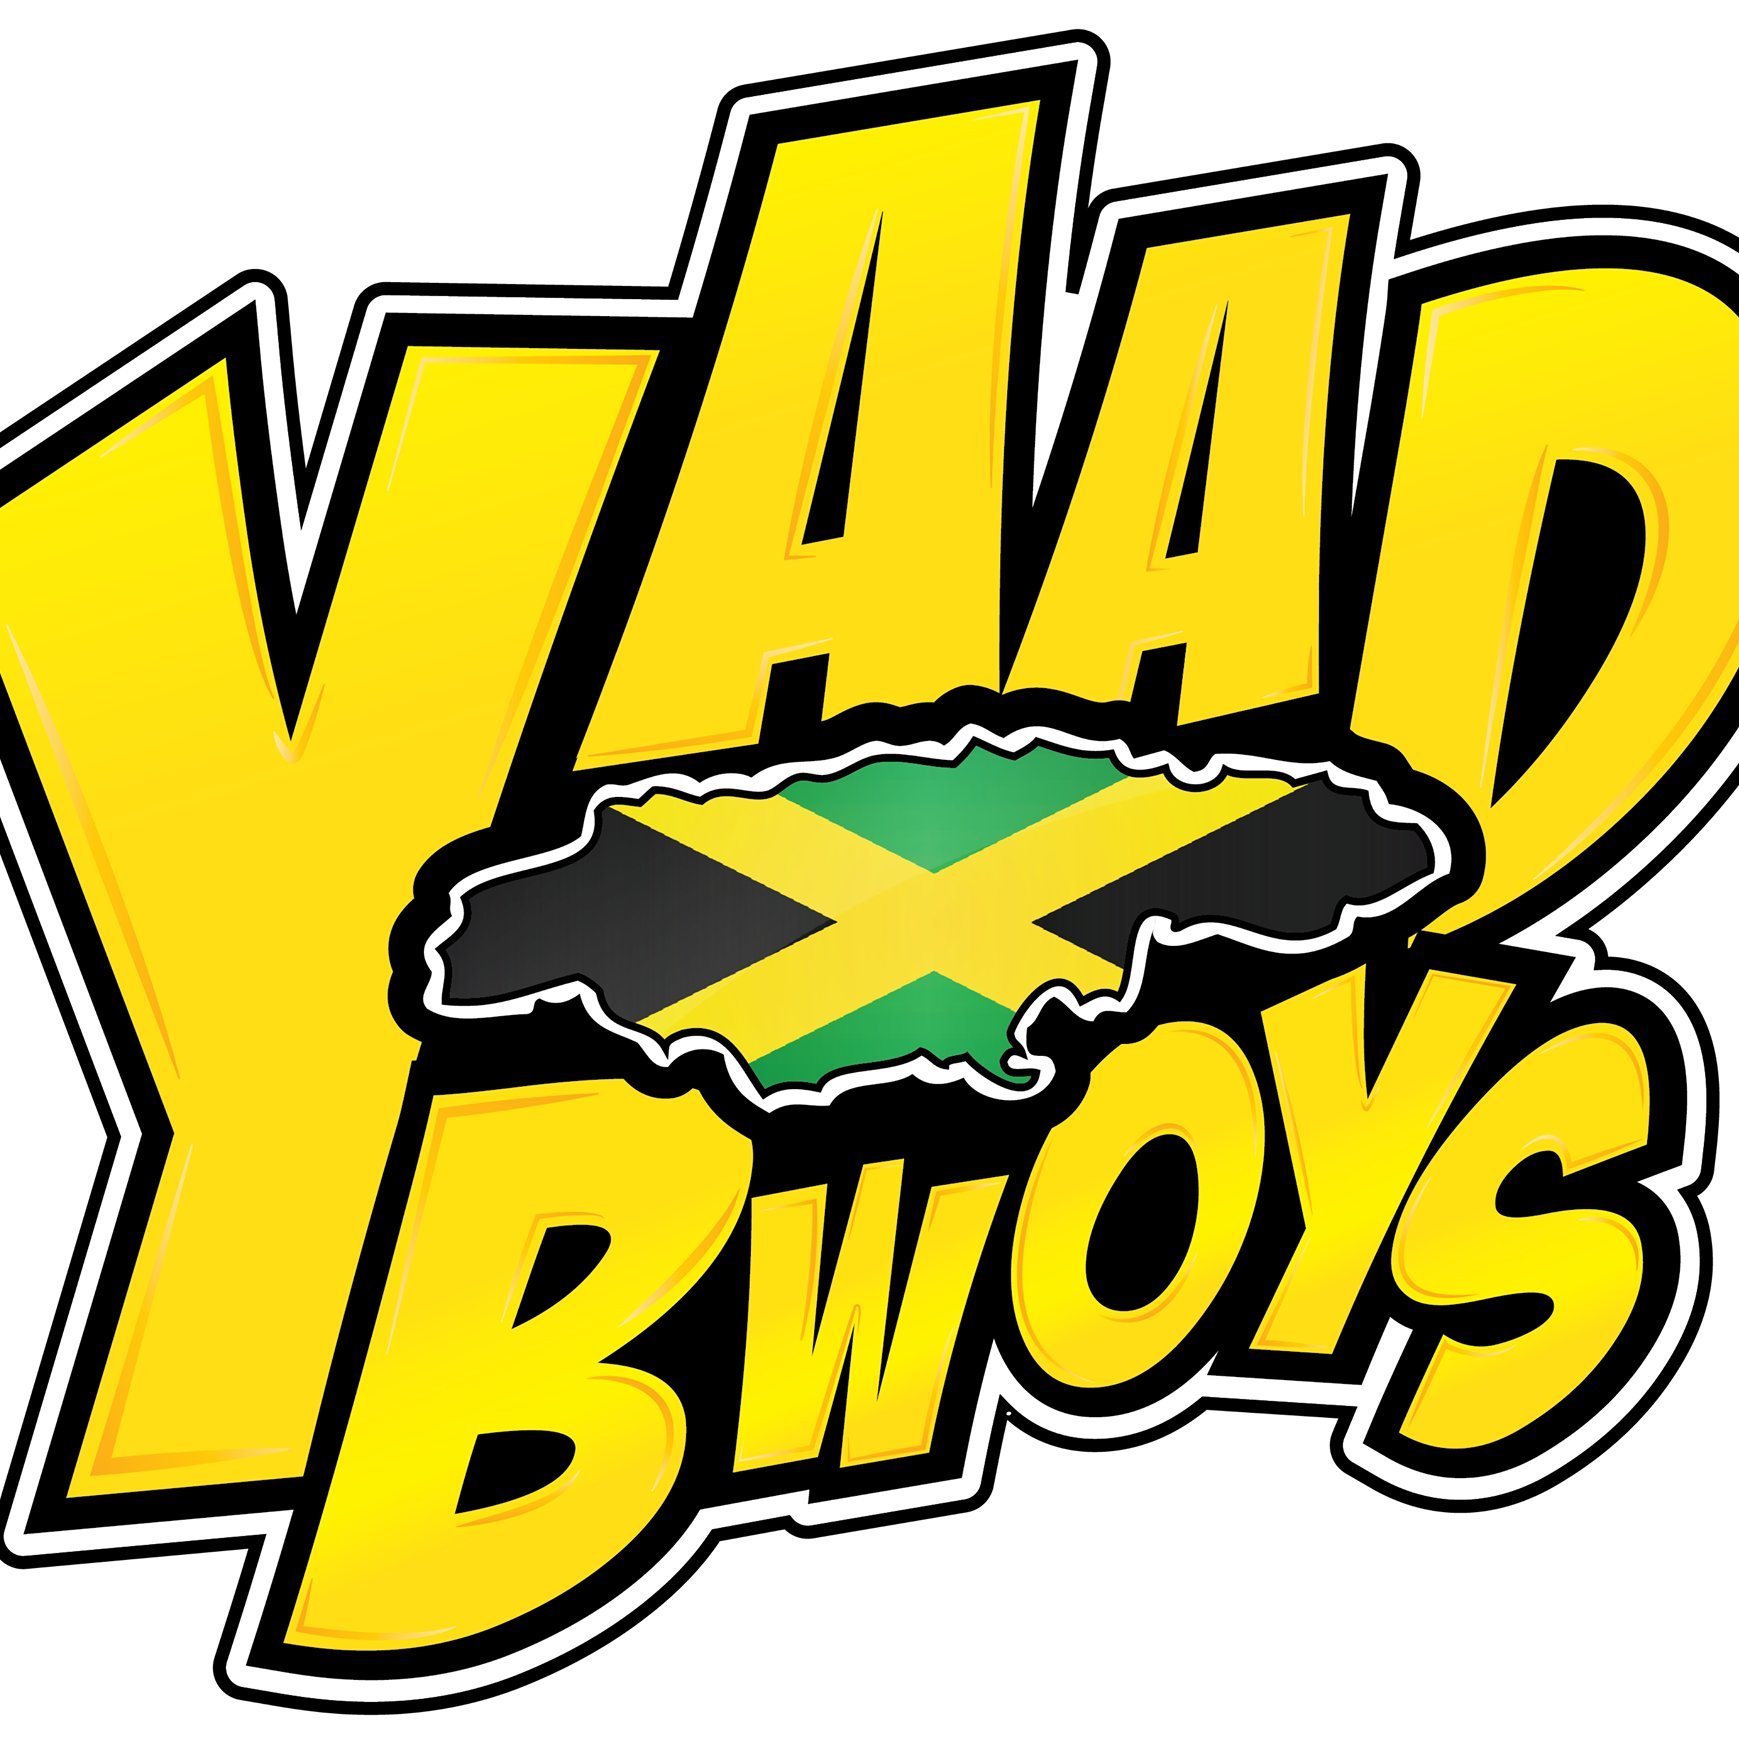 YaadBwoys